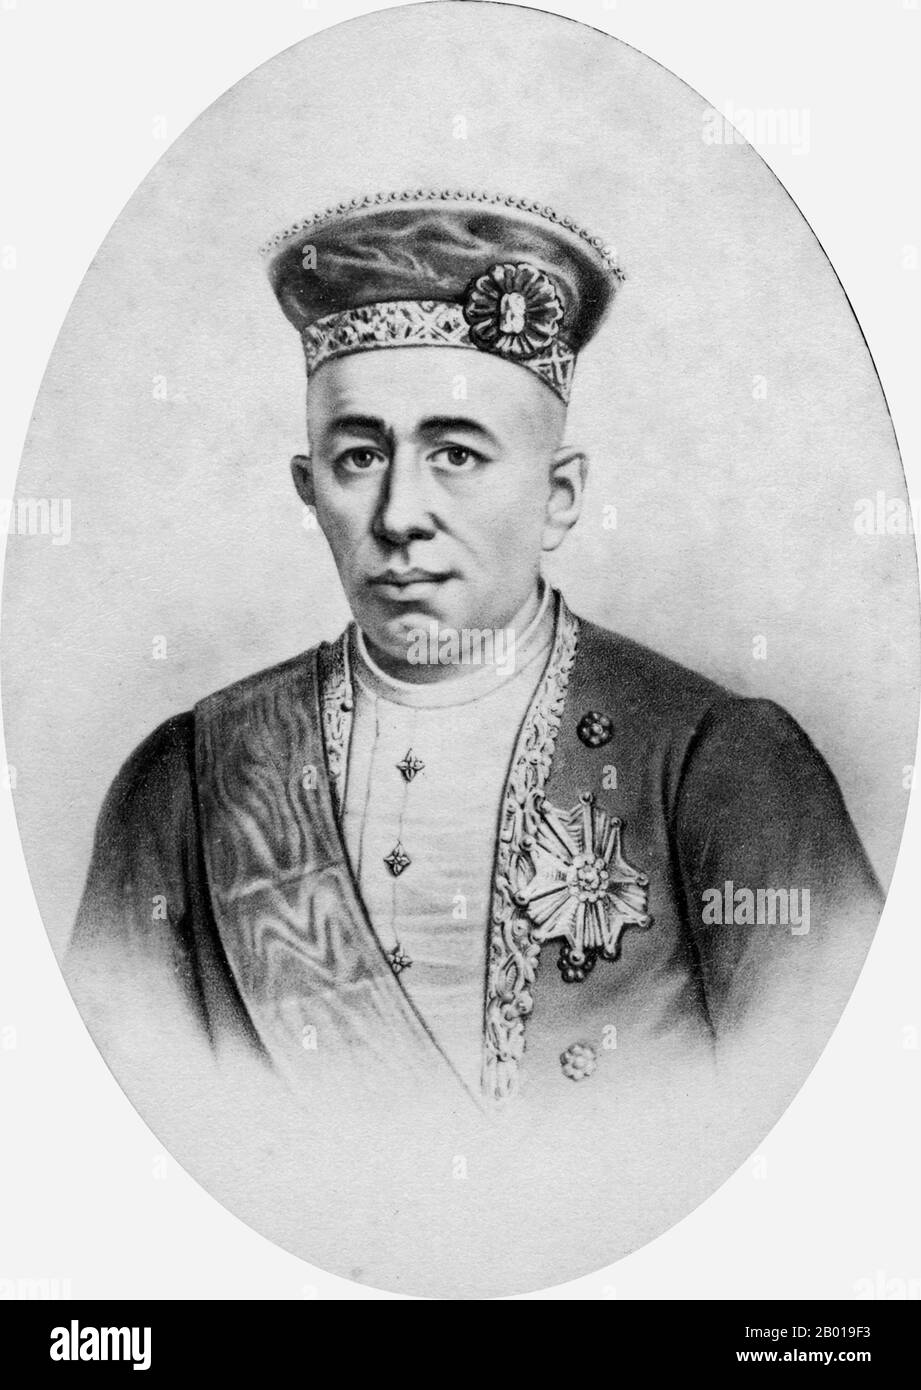 Thaïlande: Mongkut (18 octobre 1804 - 1 octobre 1868), quatrième roi de Siam. Carte de visite de Charles Jacotin (fl. 1863-1895), chap 1863-1868. Mongkut, également connu sous le nom de Rama IV et nom complet Phra Bat Somdet Phra Menthora Ramathibodi Sri Sinthara Mahamakut Phra Mongkut Phra Siam Deva Mahamakut Wittaya Maharaj, était le quatrième roi de Siam de la Maison de Chakri. De 1851 jusqu'à sa mort en 1868, il est plus connu au niveau international comme le roi dans la comédie musicale « le roi et moi » de 1951, basée sur le roman de 1944 sur les années d'Anna Leonowens à sa cour. Banque D'Images